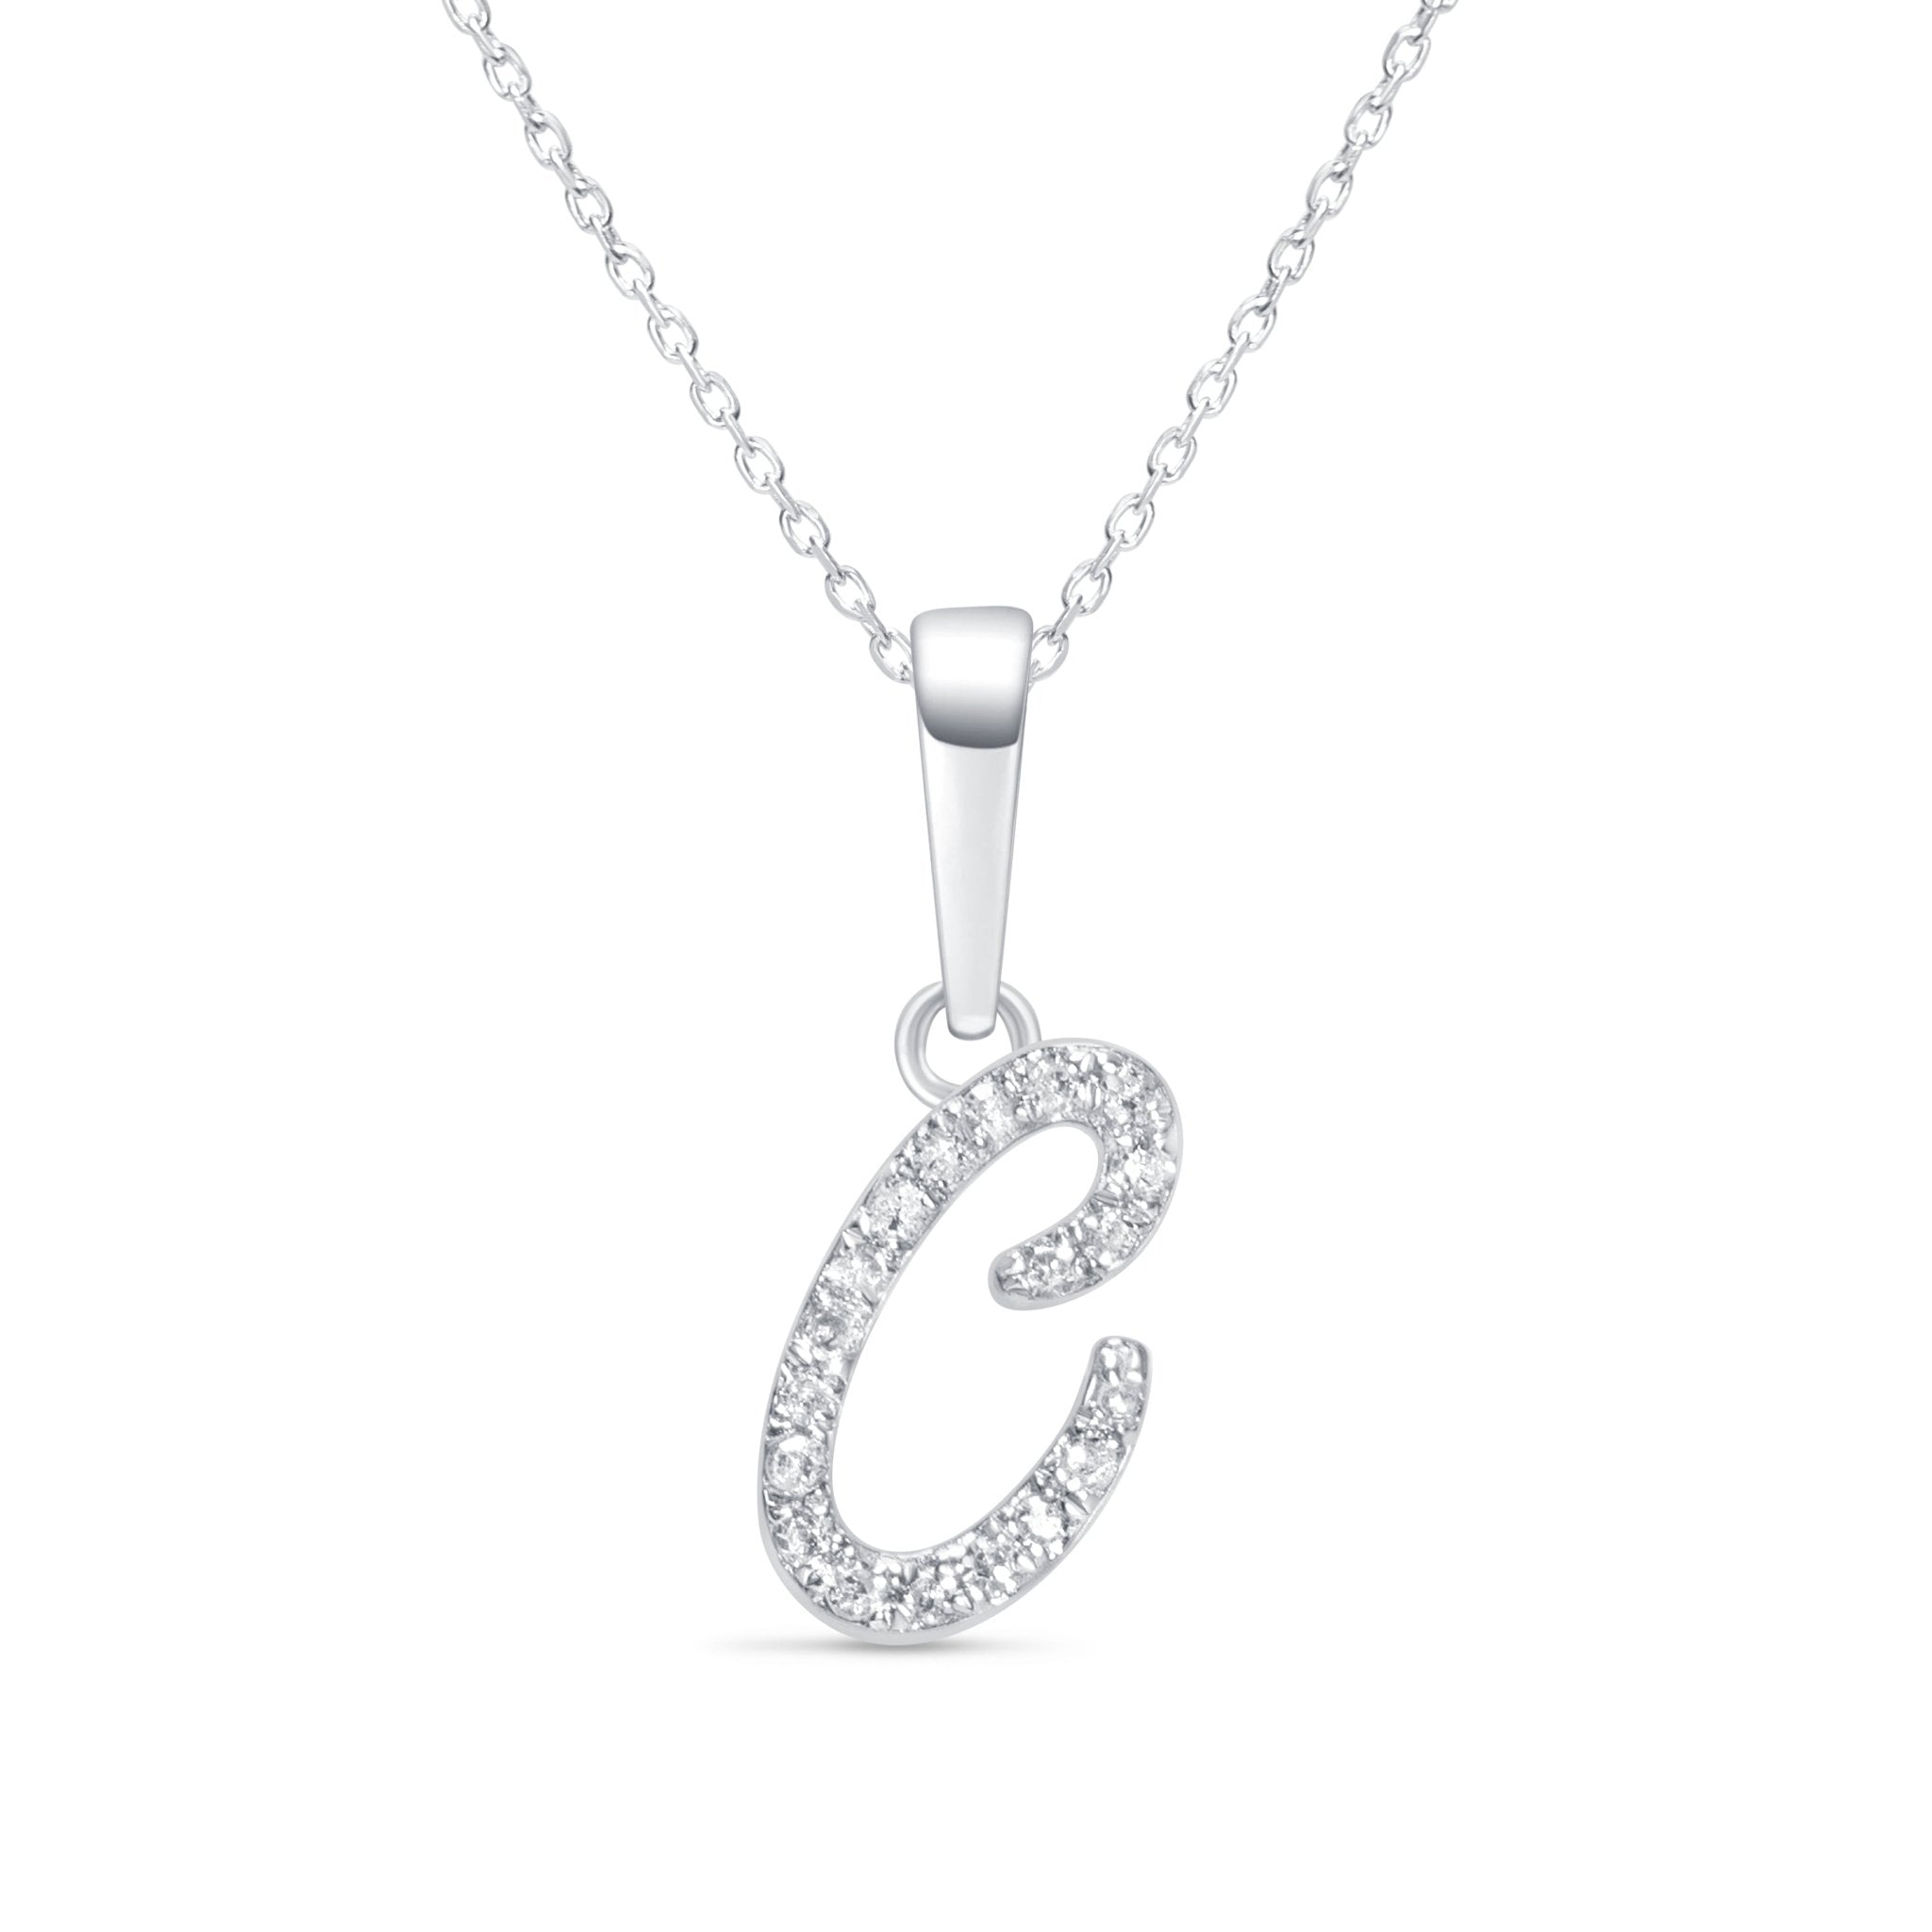 Cursive Diamond Initial Necklace - C Necklaces Estella Collection #product_description# 18557 14k Diamond Gemstone #tag4# #tag5# #tag6# #tag7# #tag8# #tag9# #tag10# 14k White Gold